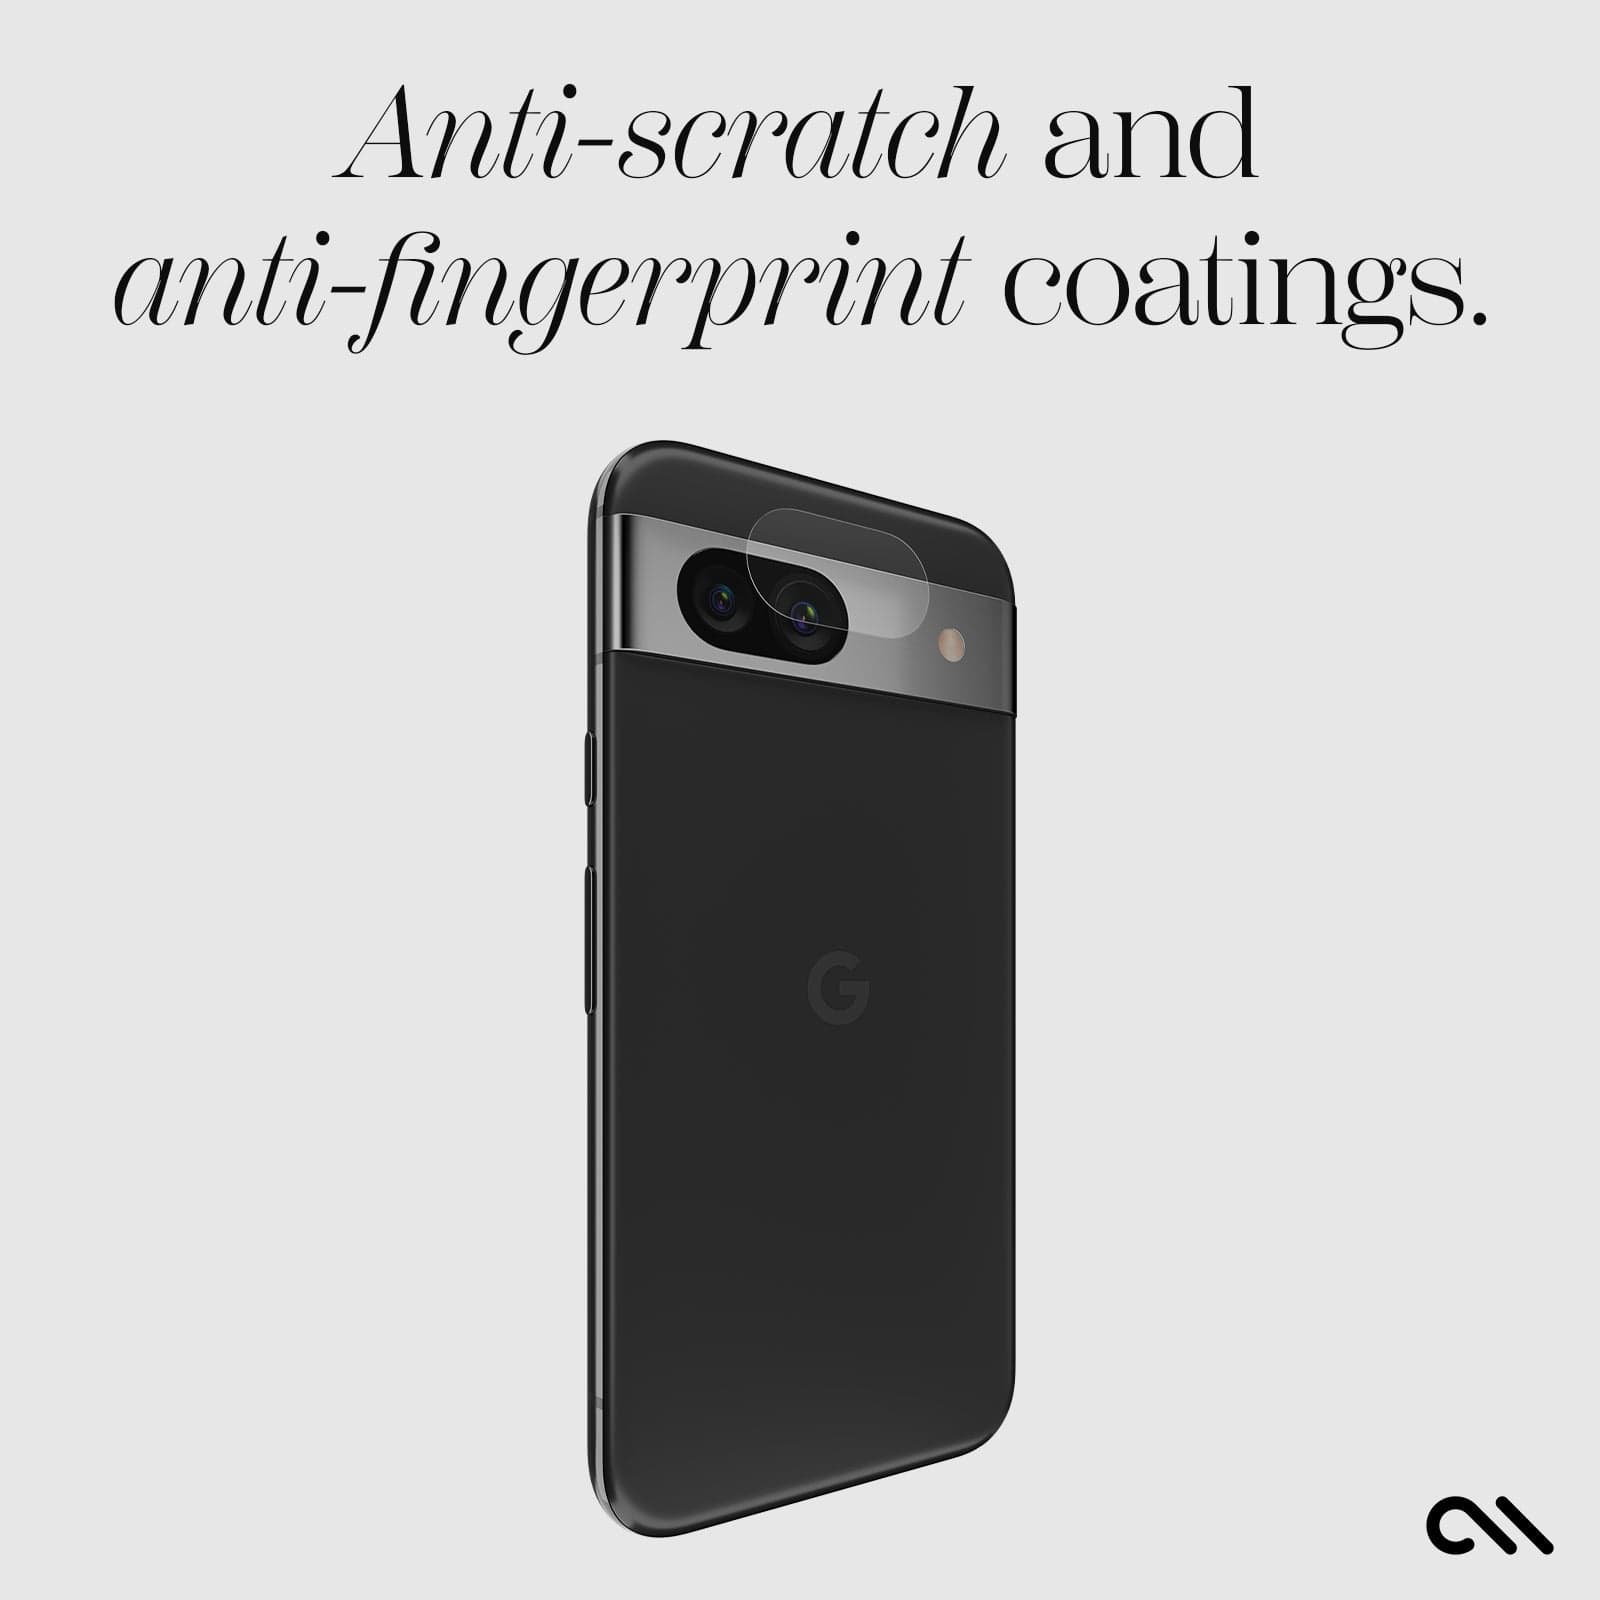 anti-scrath and anti-fingerprint coatings